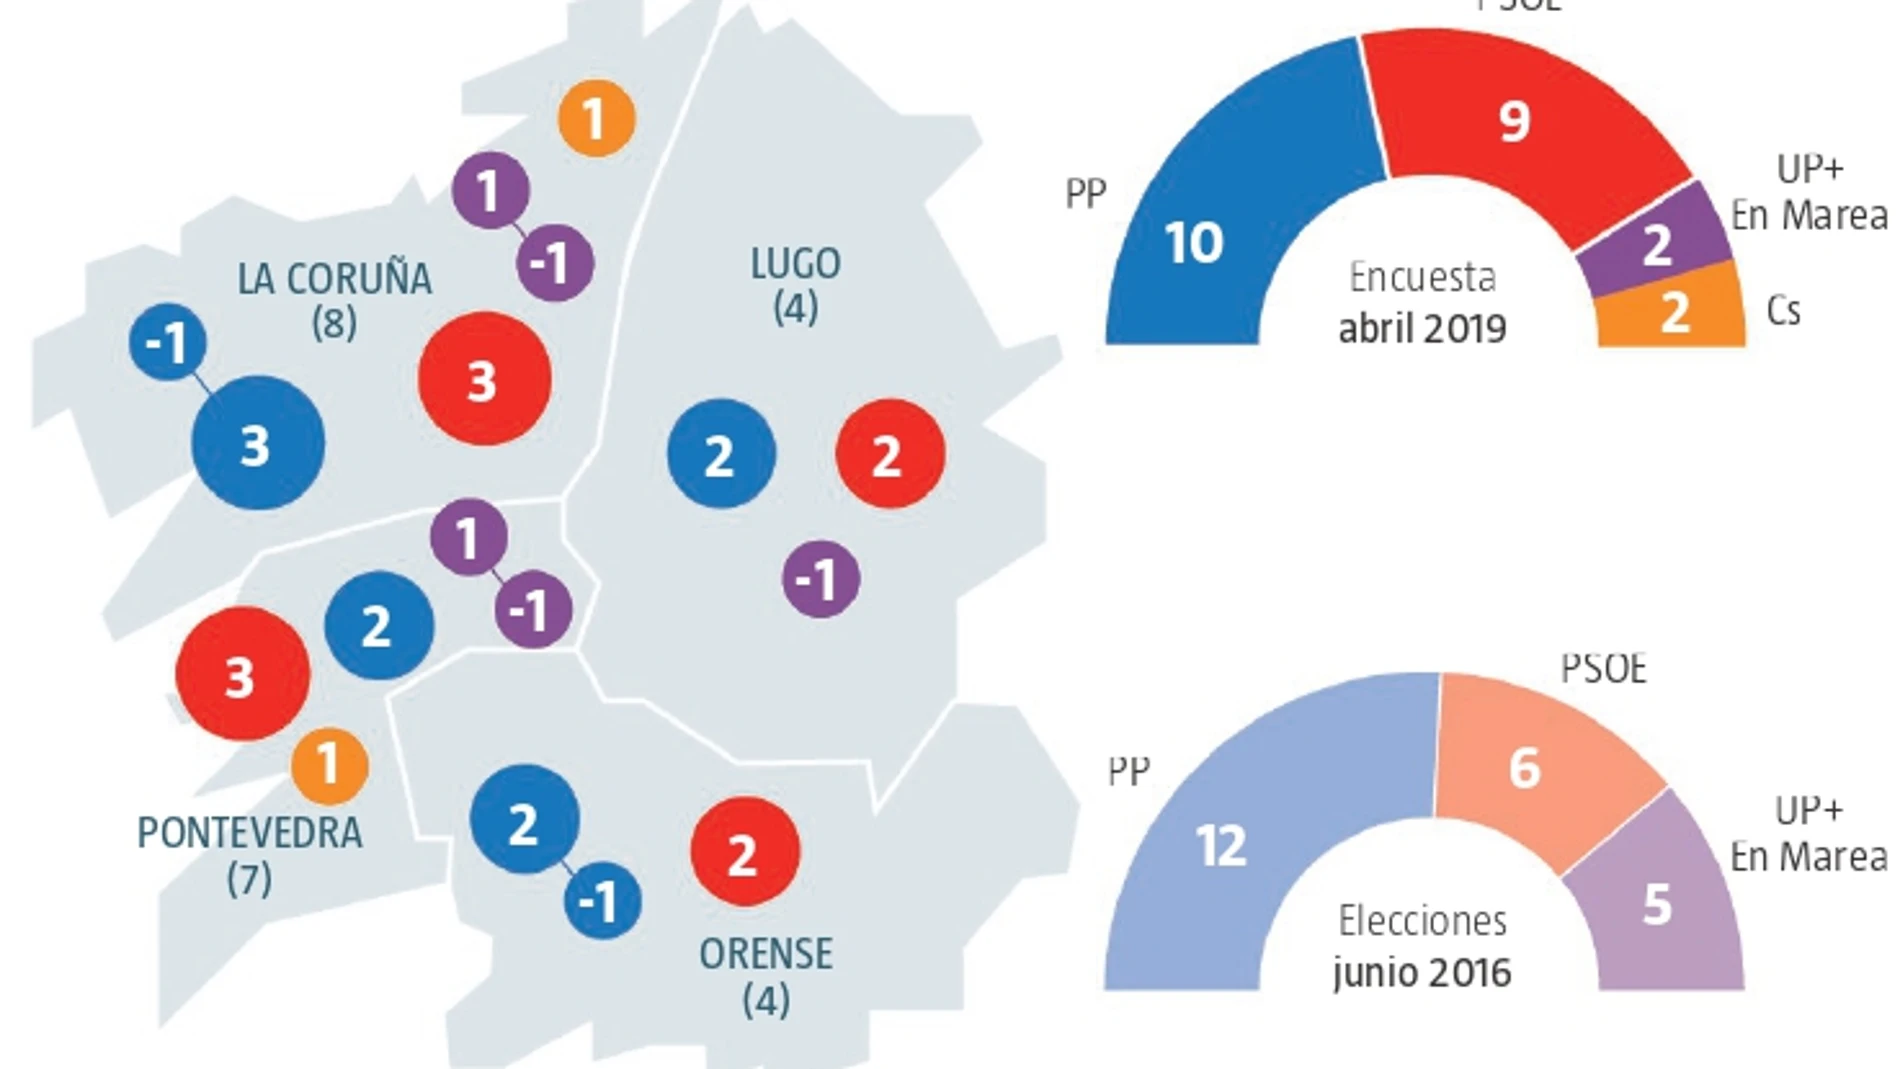 Encuesta electoral Galicia: El PP gana aunque cede dos a Cs y Vox no entra